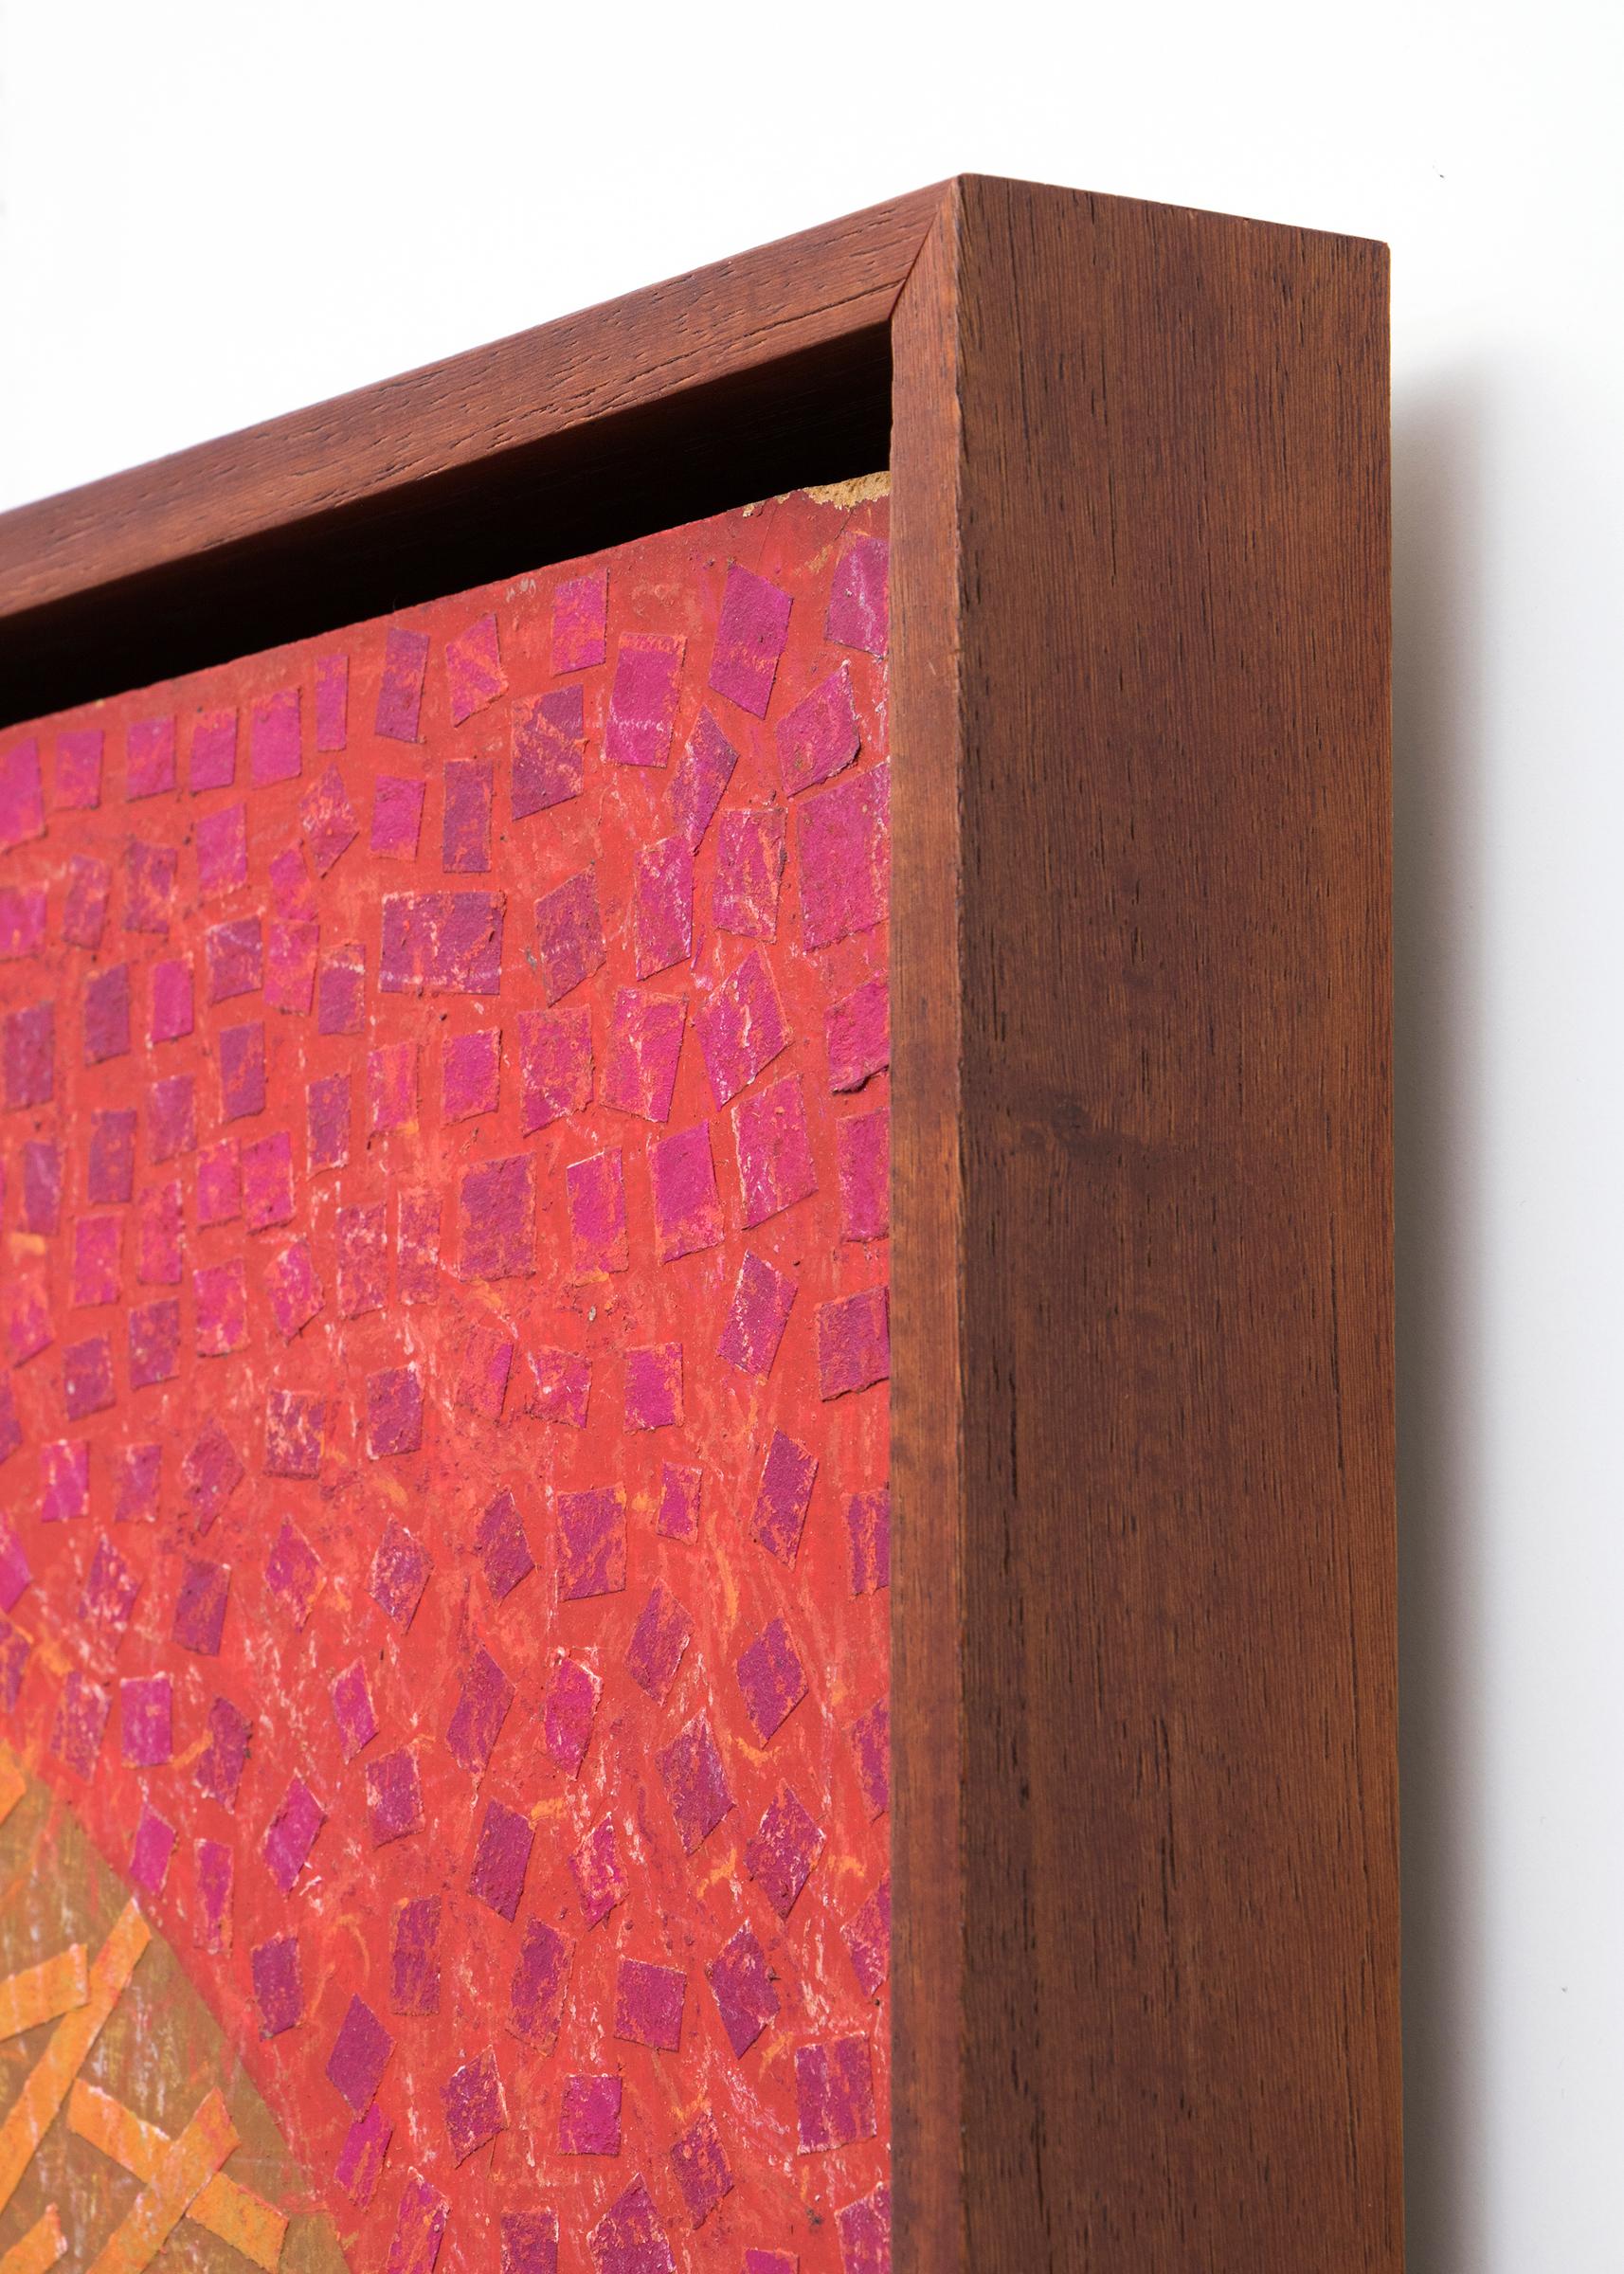 Collage de crayon et de papier sur carton représentant une pistache par l'artiste du 20e siècle, Margo Hoff, vers 1970.  Présenté dans un cadre en bois personnalisé, les dimensions extérieures mesurent 25 ¾ x 31 ½ x 2 pouces.  La taille de l'image